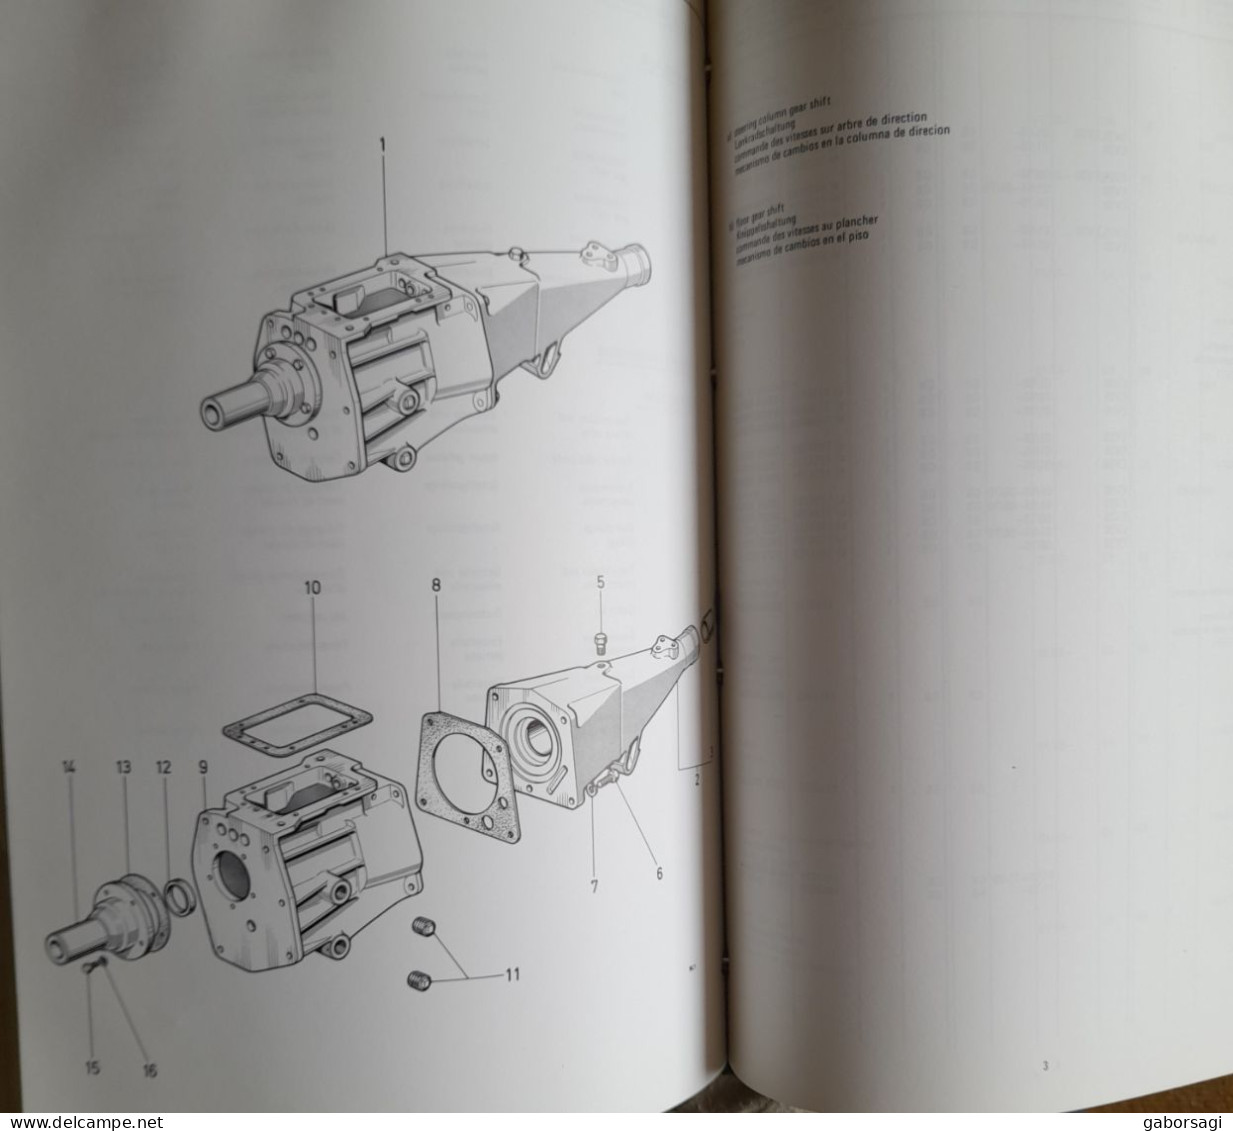 Ford Transmission Parts Catalogue 1973 Edition - Libros Sobre Colecciones